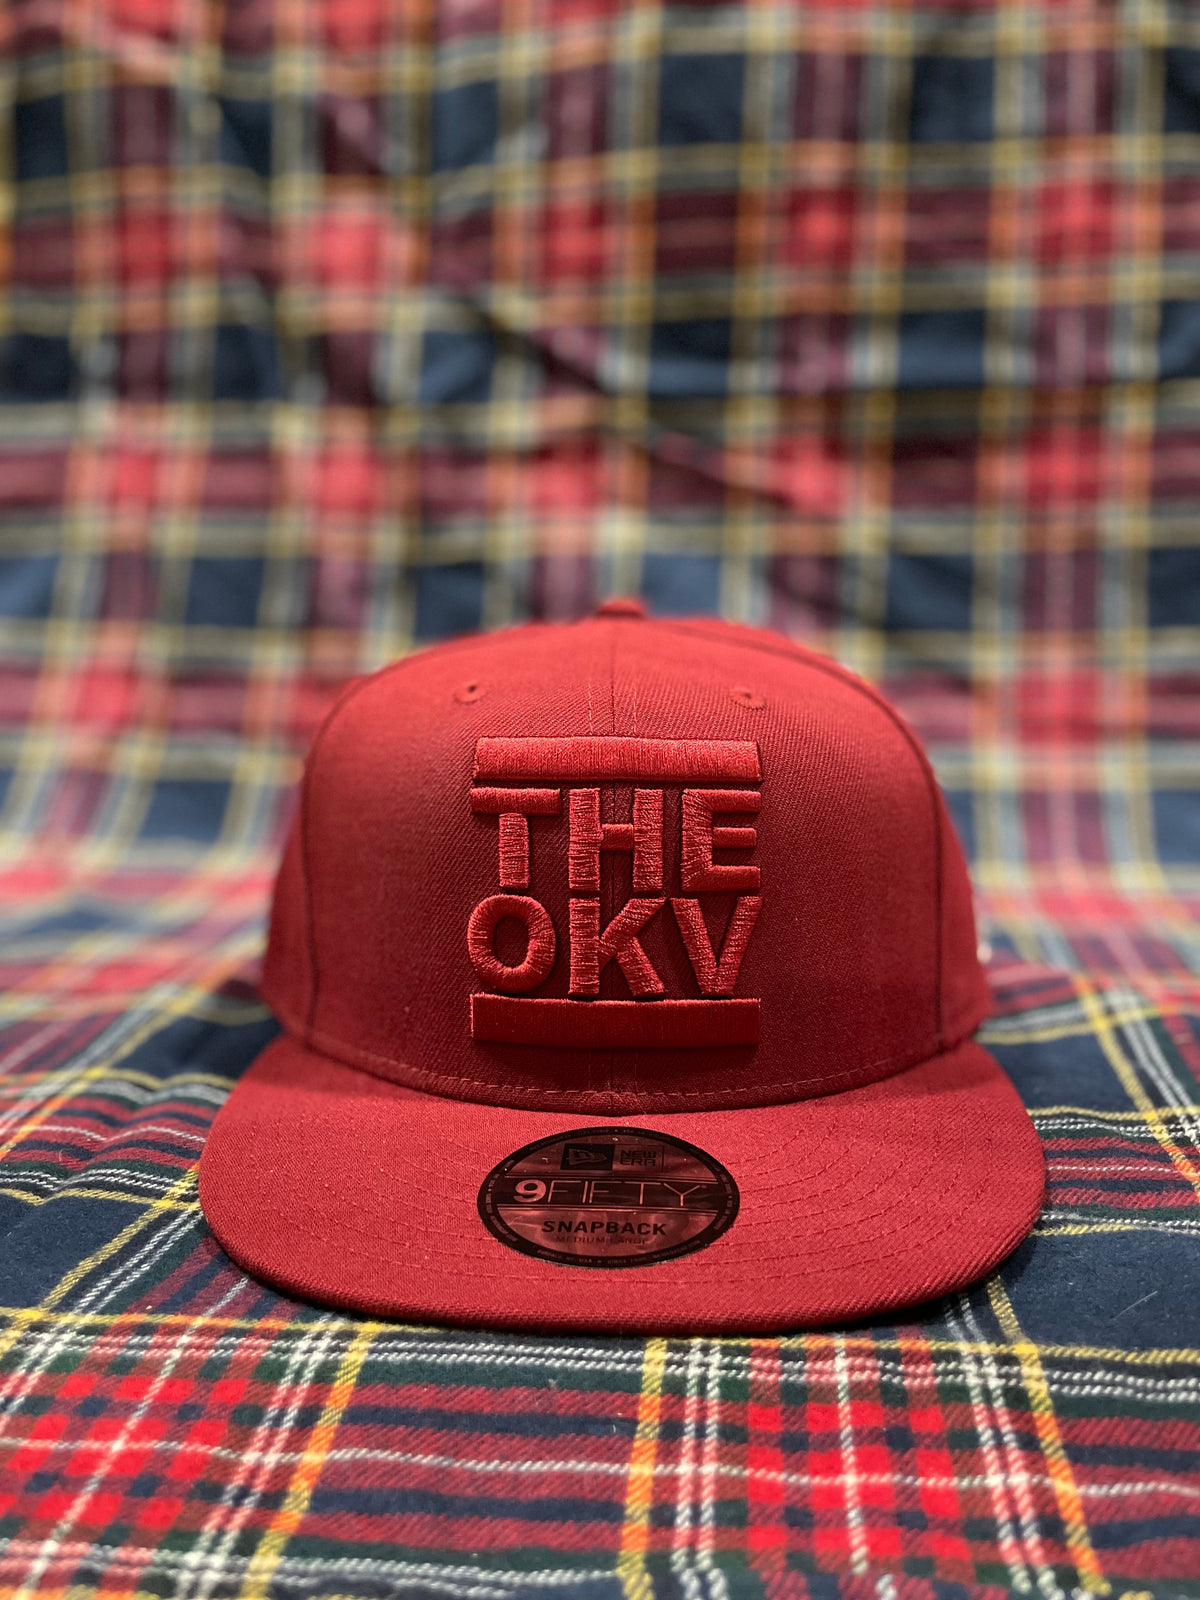 THEOKV Snapback hat - Burgundy - Birch Hill Studio